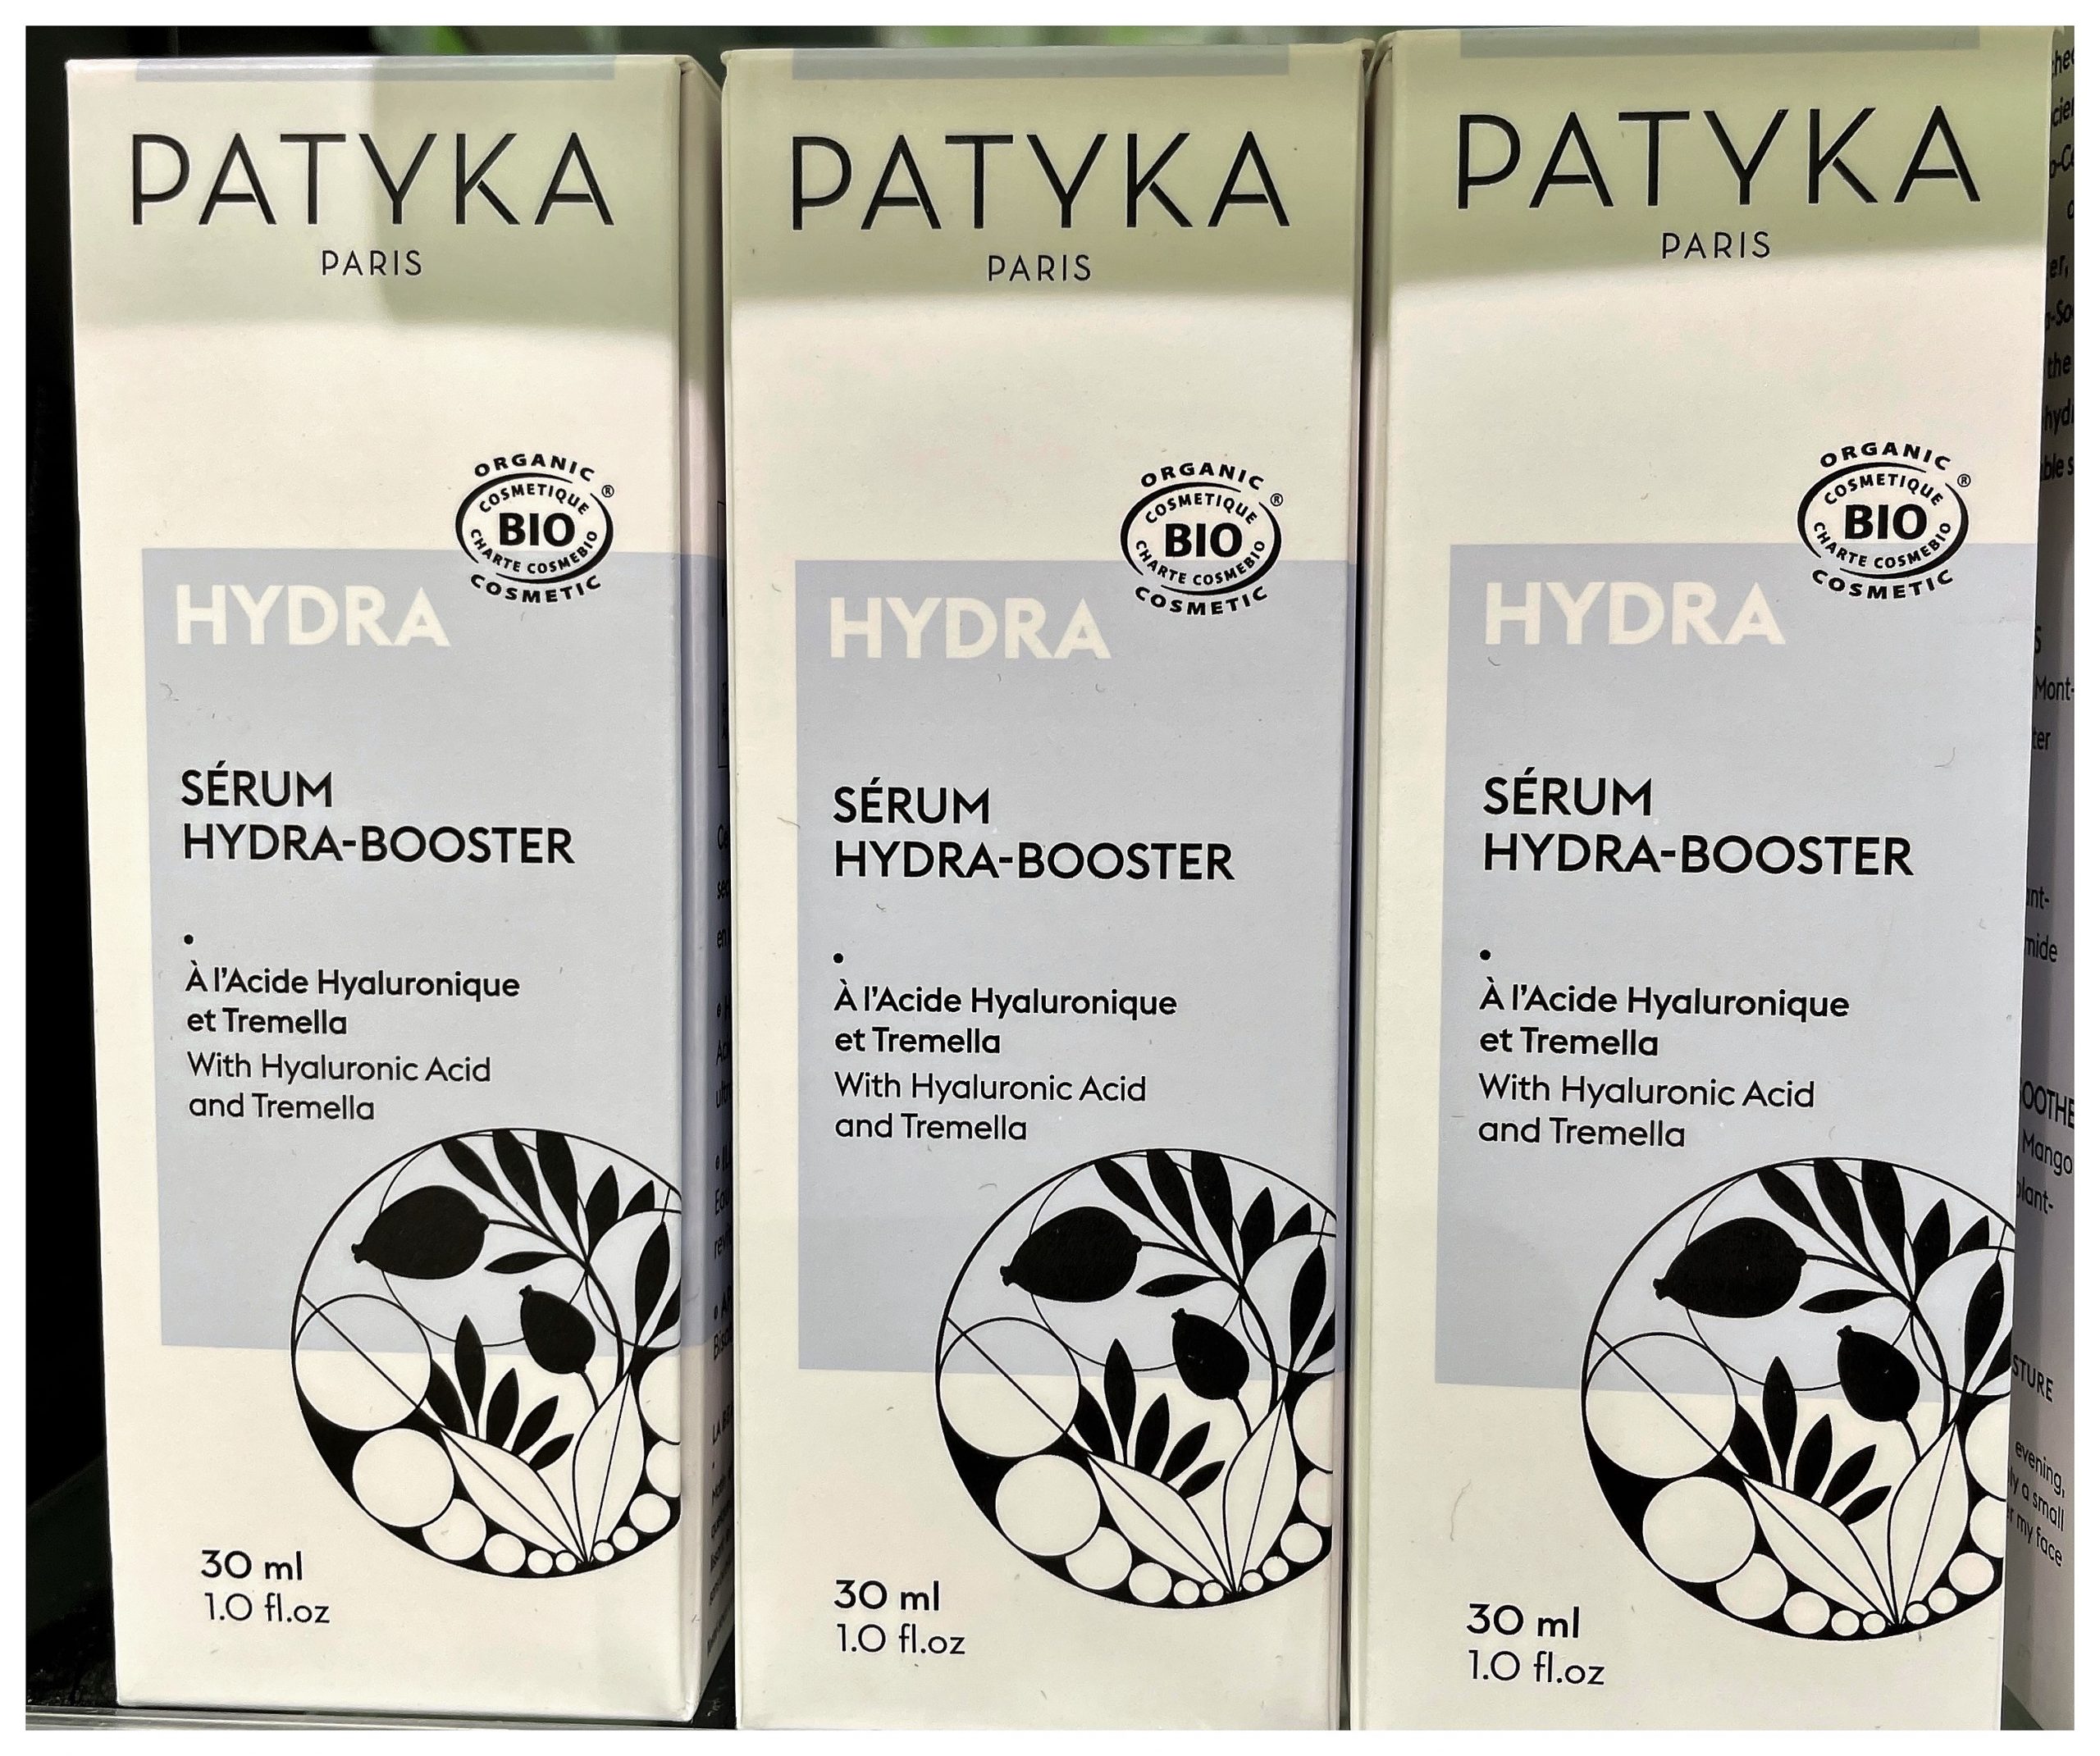 PATIKA HYDRA BOOSTER SERUM 30ML Consiente tu piel con la hidratación orgánica de Patyka Hydra-Booster Serum. Deja que el ácido hialurónico reviva tu piel.